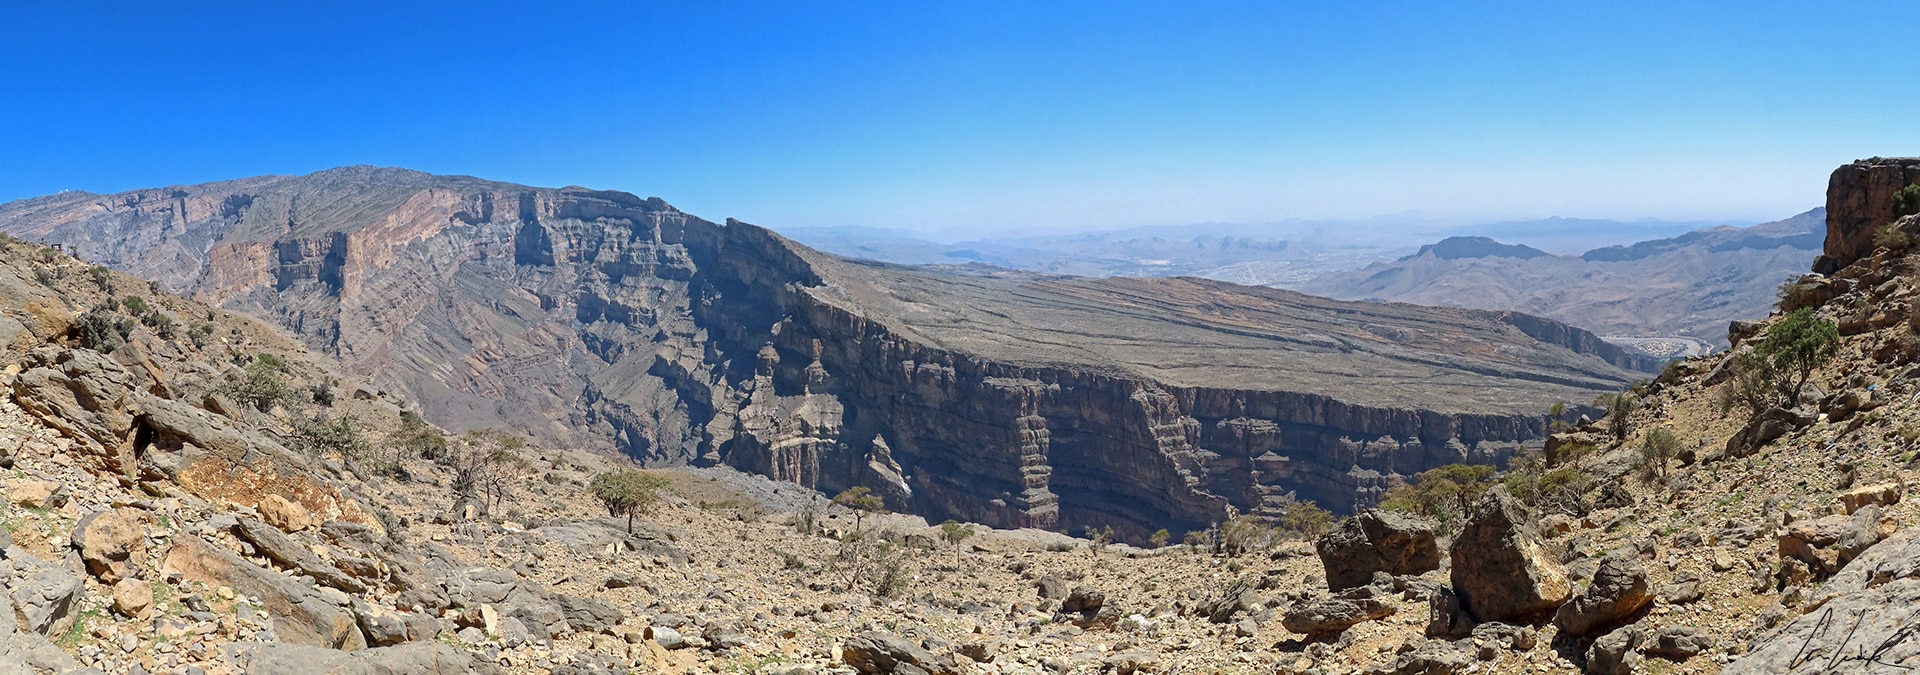 Depuis un plateau situé à 2000 mètres d’altitude, on découvre le grand canyon d’Arabie, une profonde entaille creusée dans le roc.